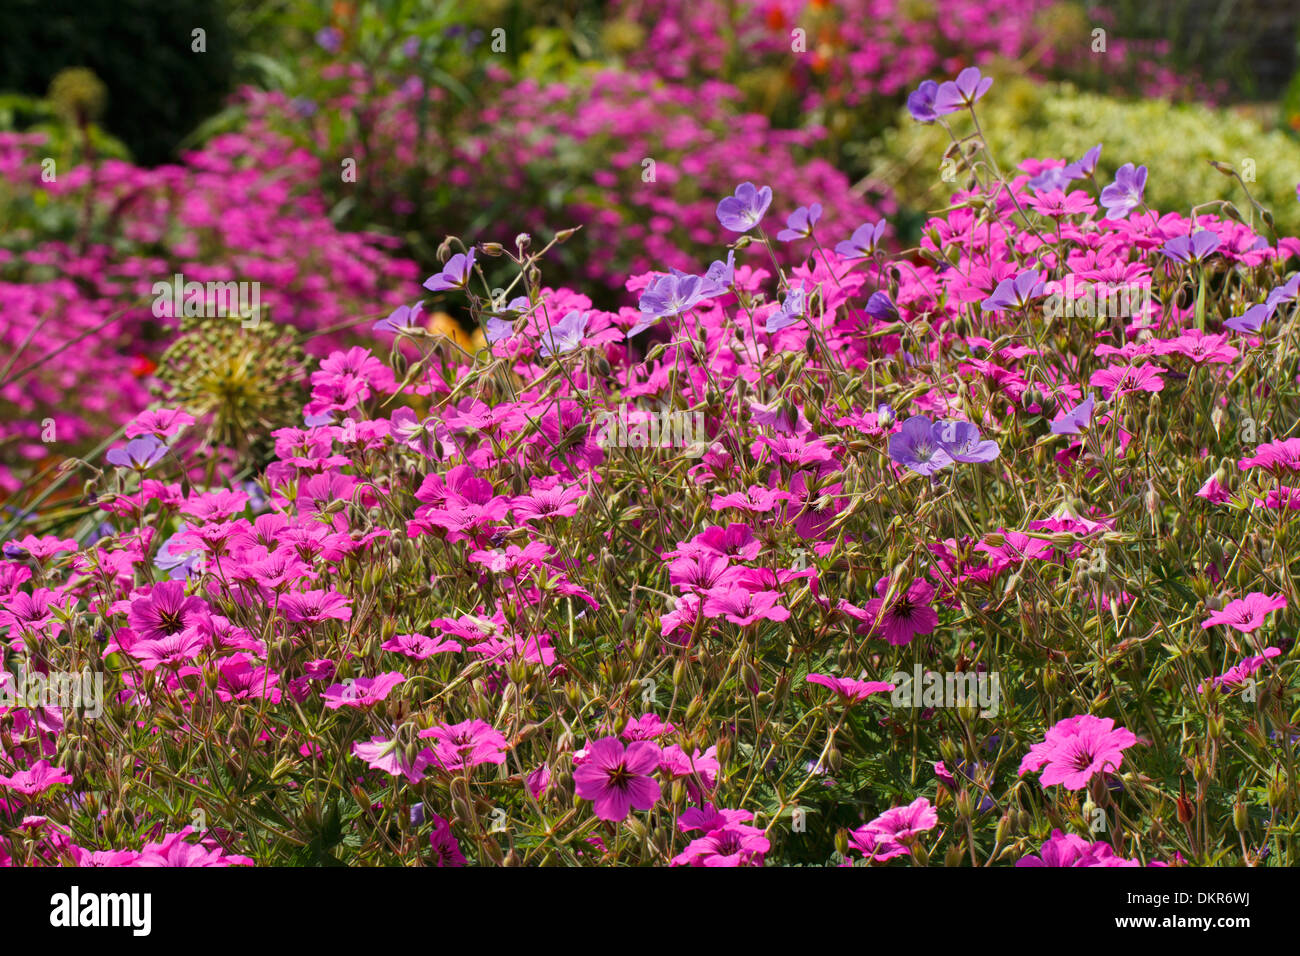 Hybrid gerani fioritura in un giardino. Carmarthen, Galles. Luglio. Foto Stock